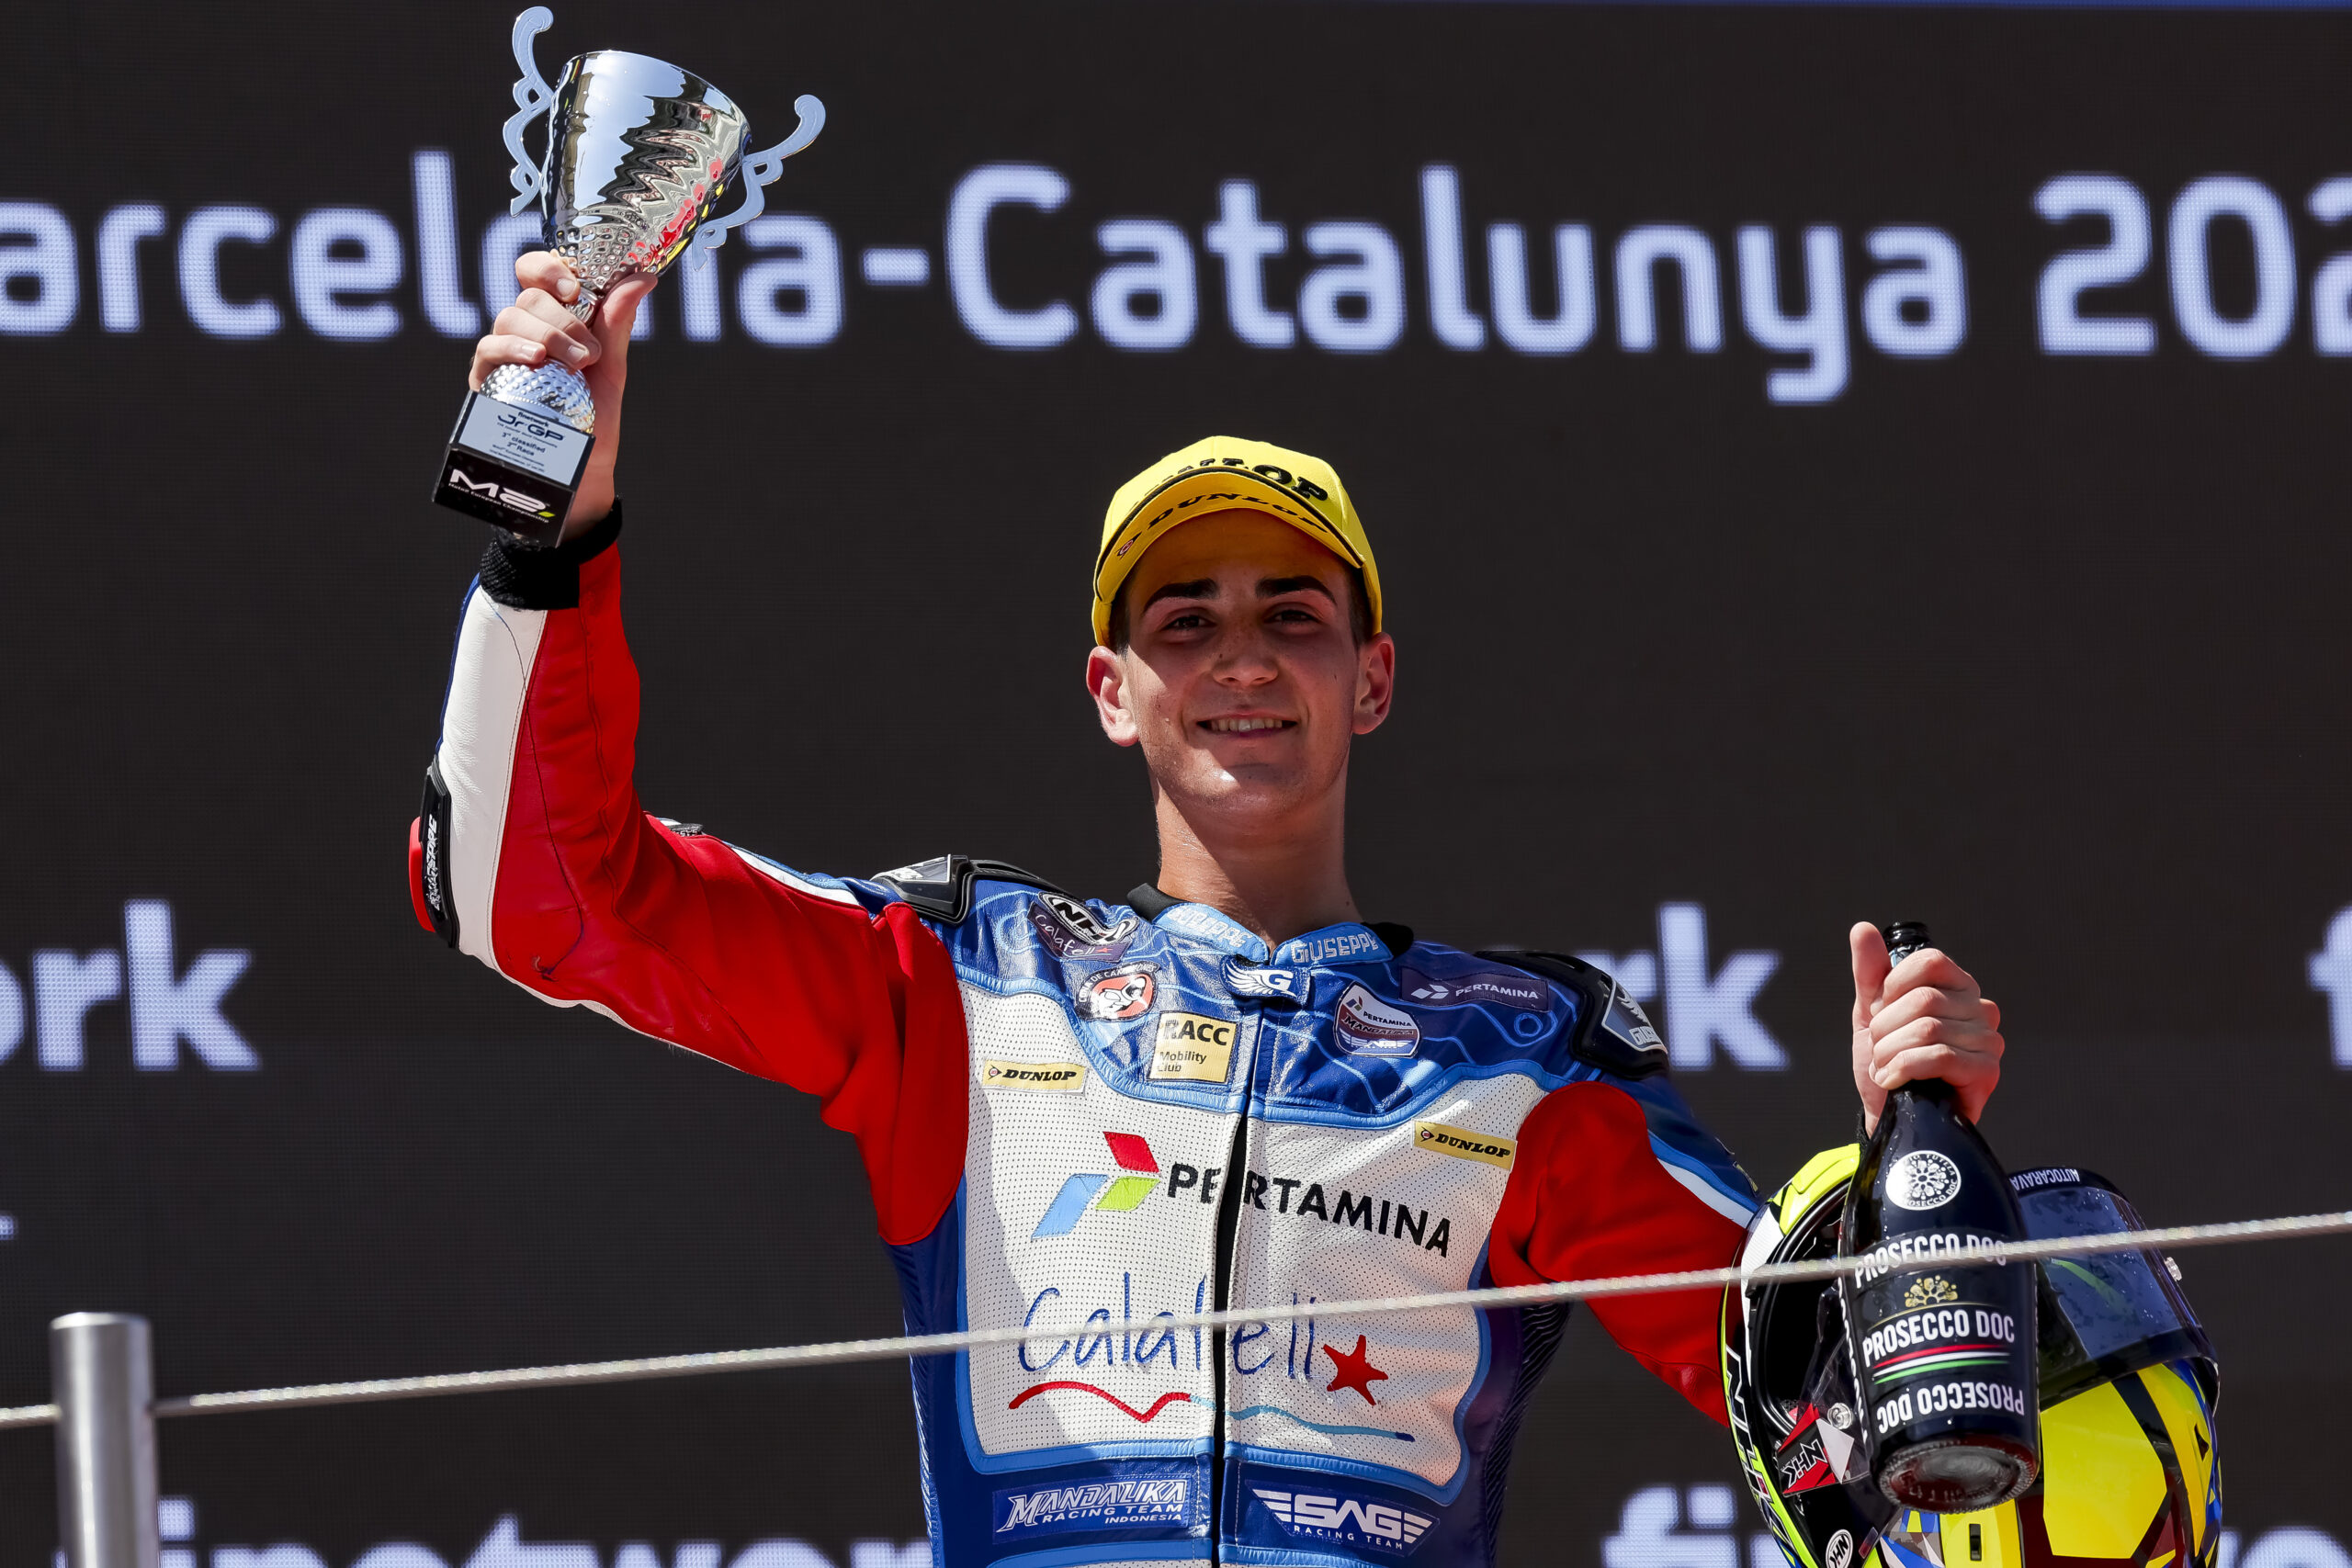 Pertamina Mandalika SAG Euvic Team podio en el Circuit de Barcelona ISB Sport